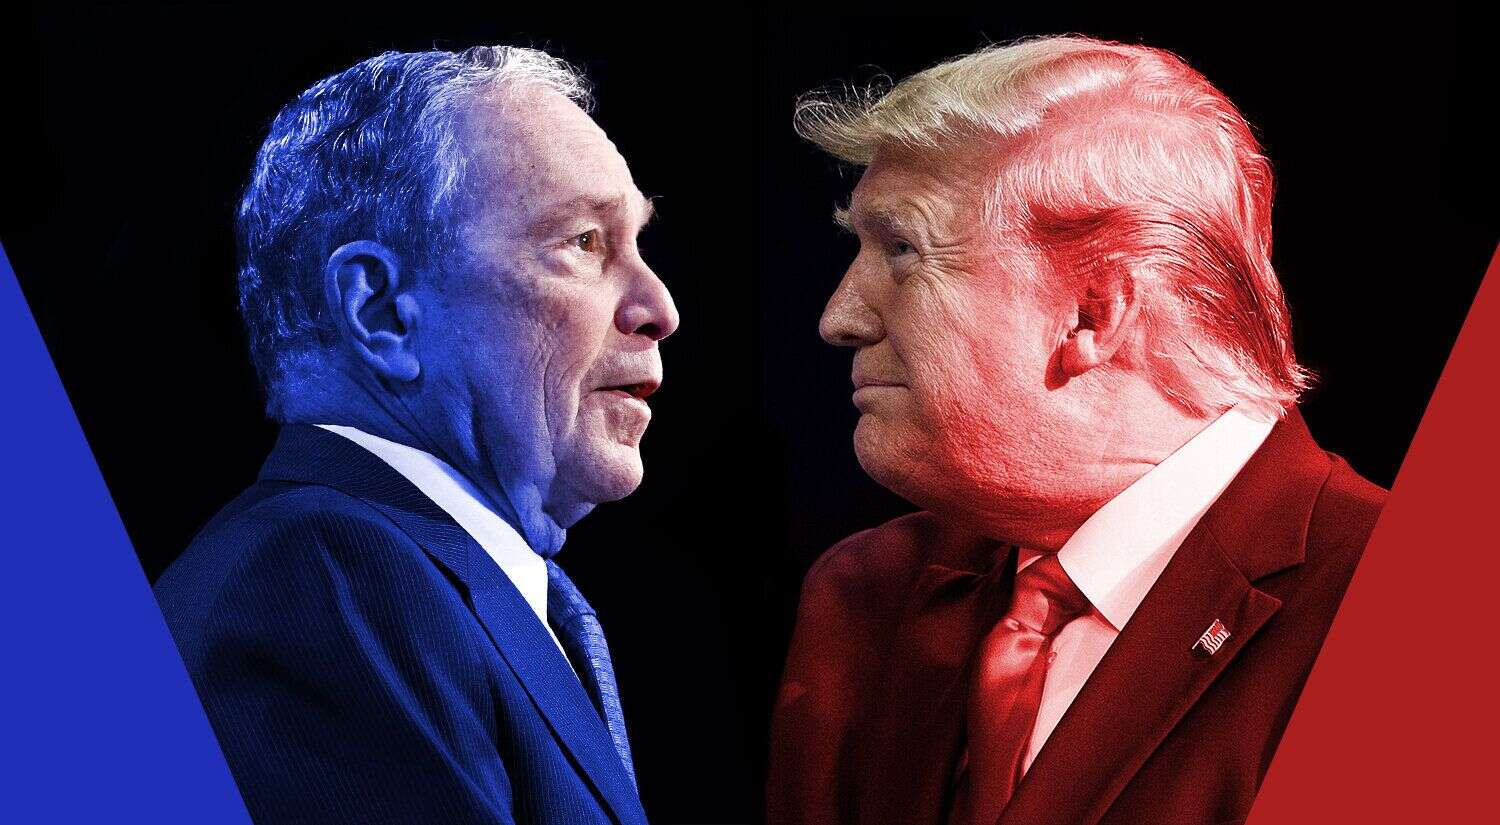 Michael Bloomberg, meilleur candidat pour battre Donald Trump à l'élection présidentielle américaine de 2020?